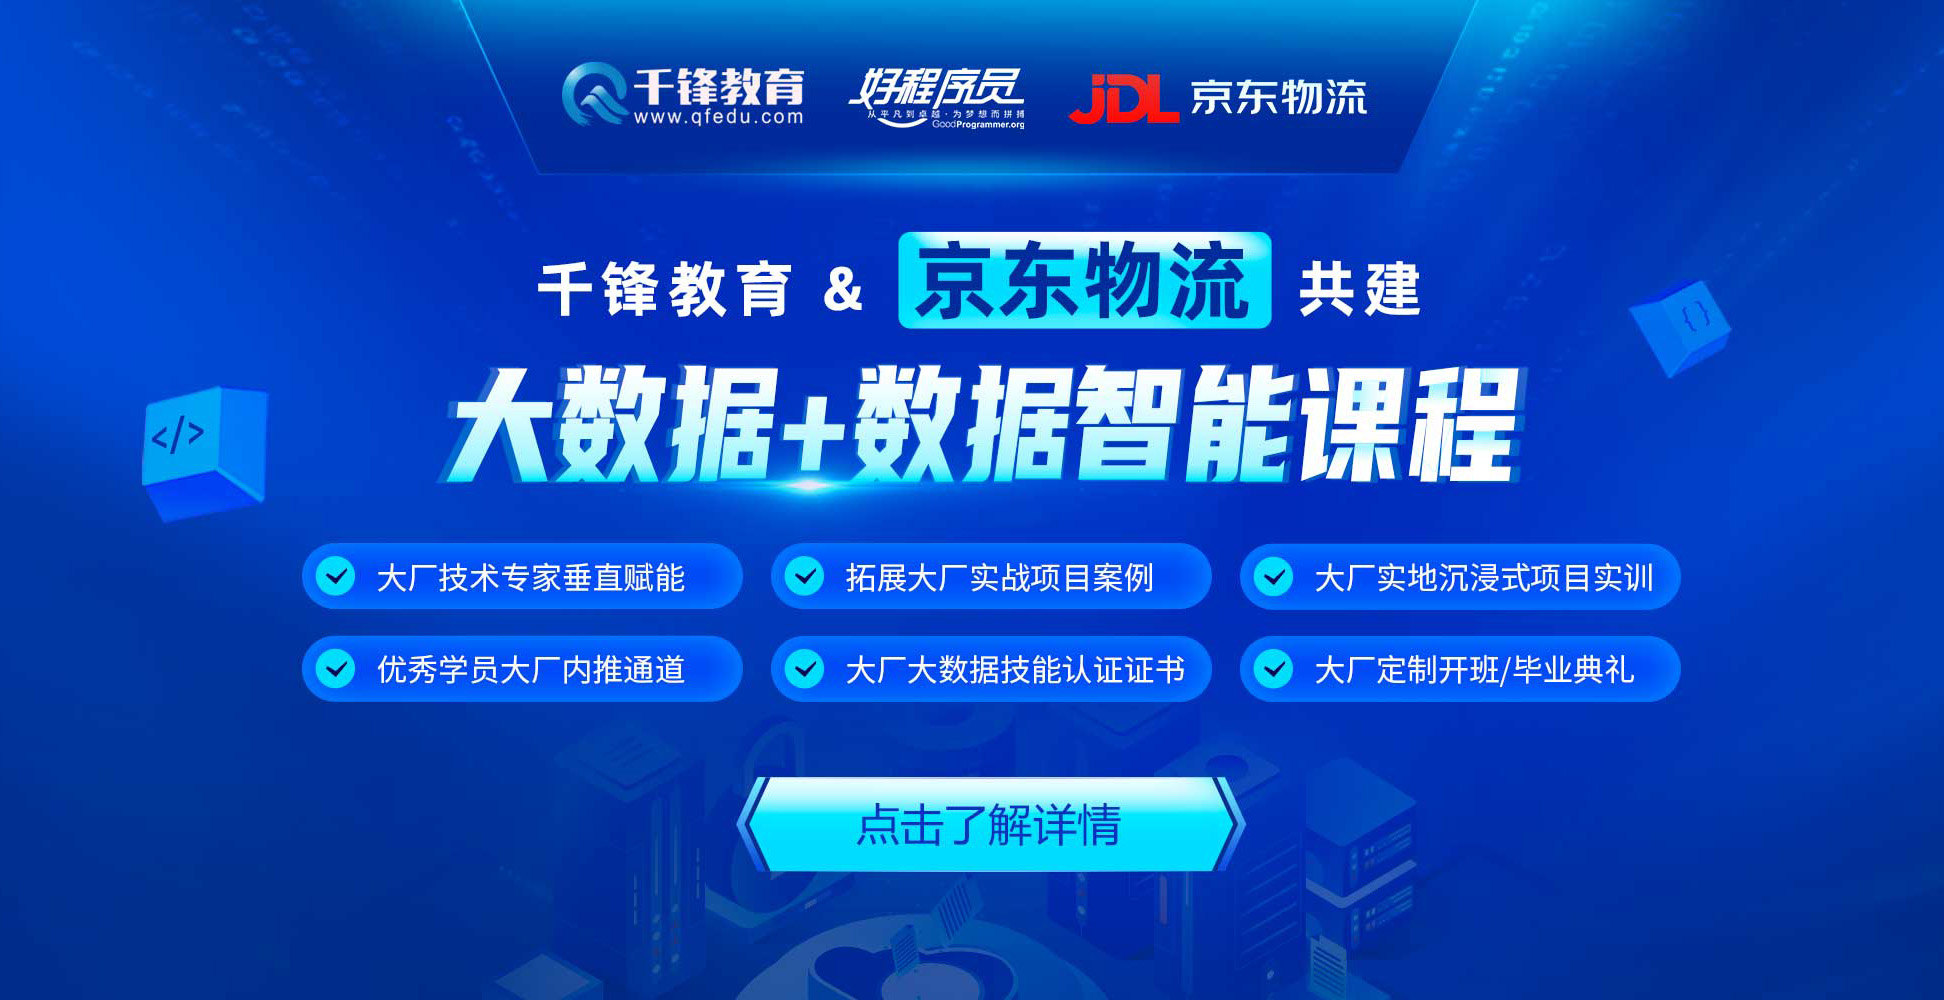 上海大数据培训实战化培训班-上海大数据智能学习-上海千锋IT